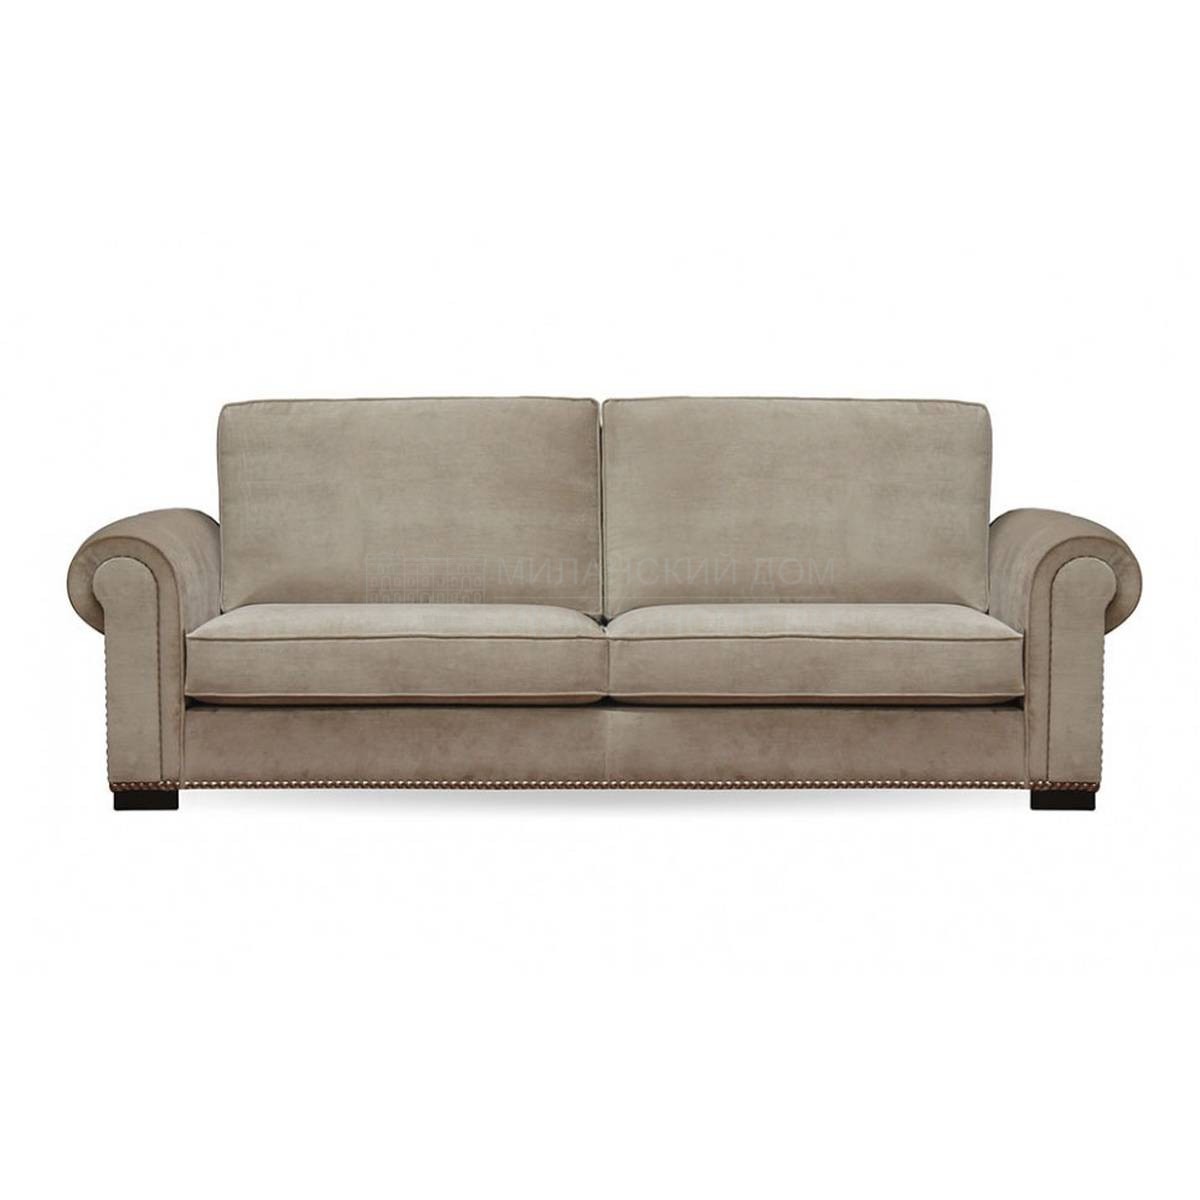 Прямой диван Laguna/sofa из Испании фабрики MANUEL LARRAGA